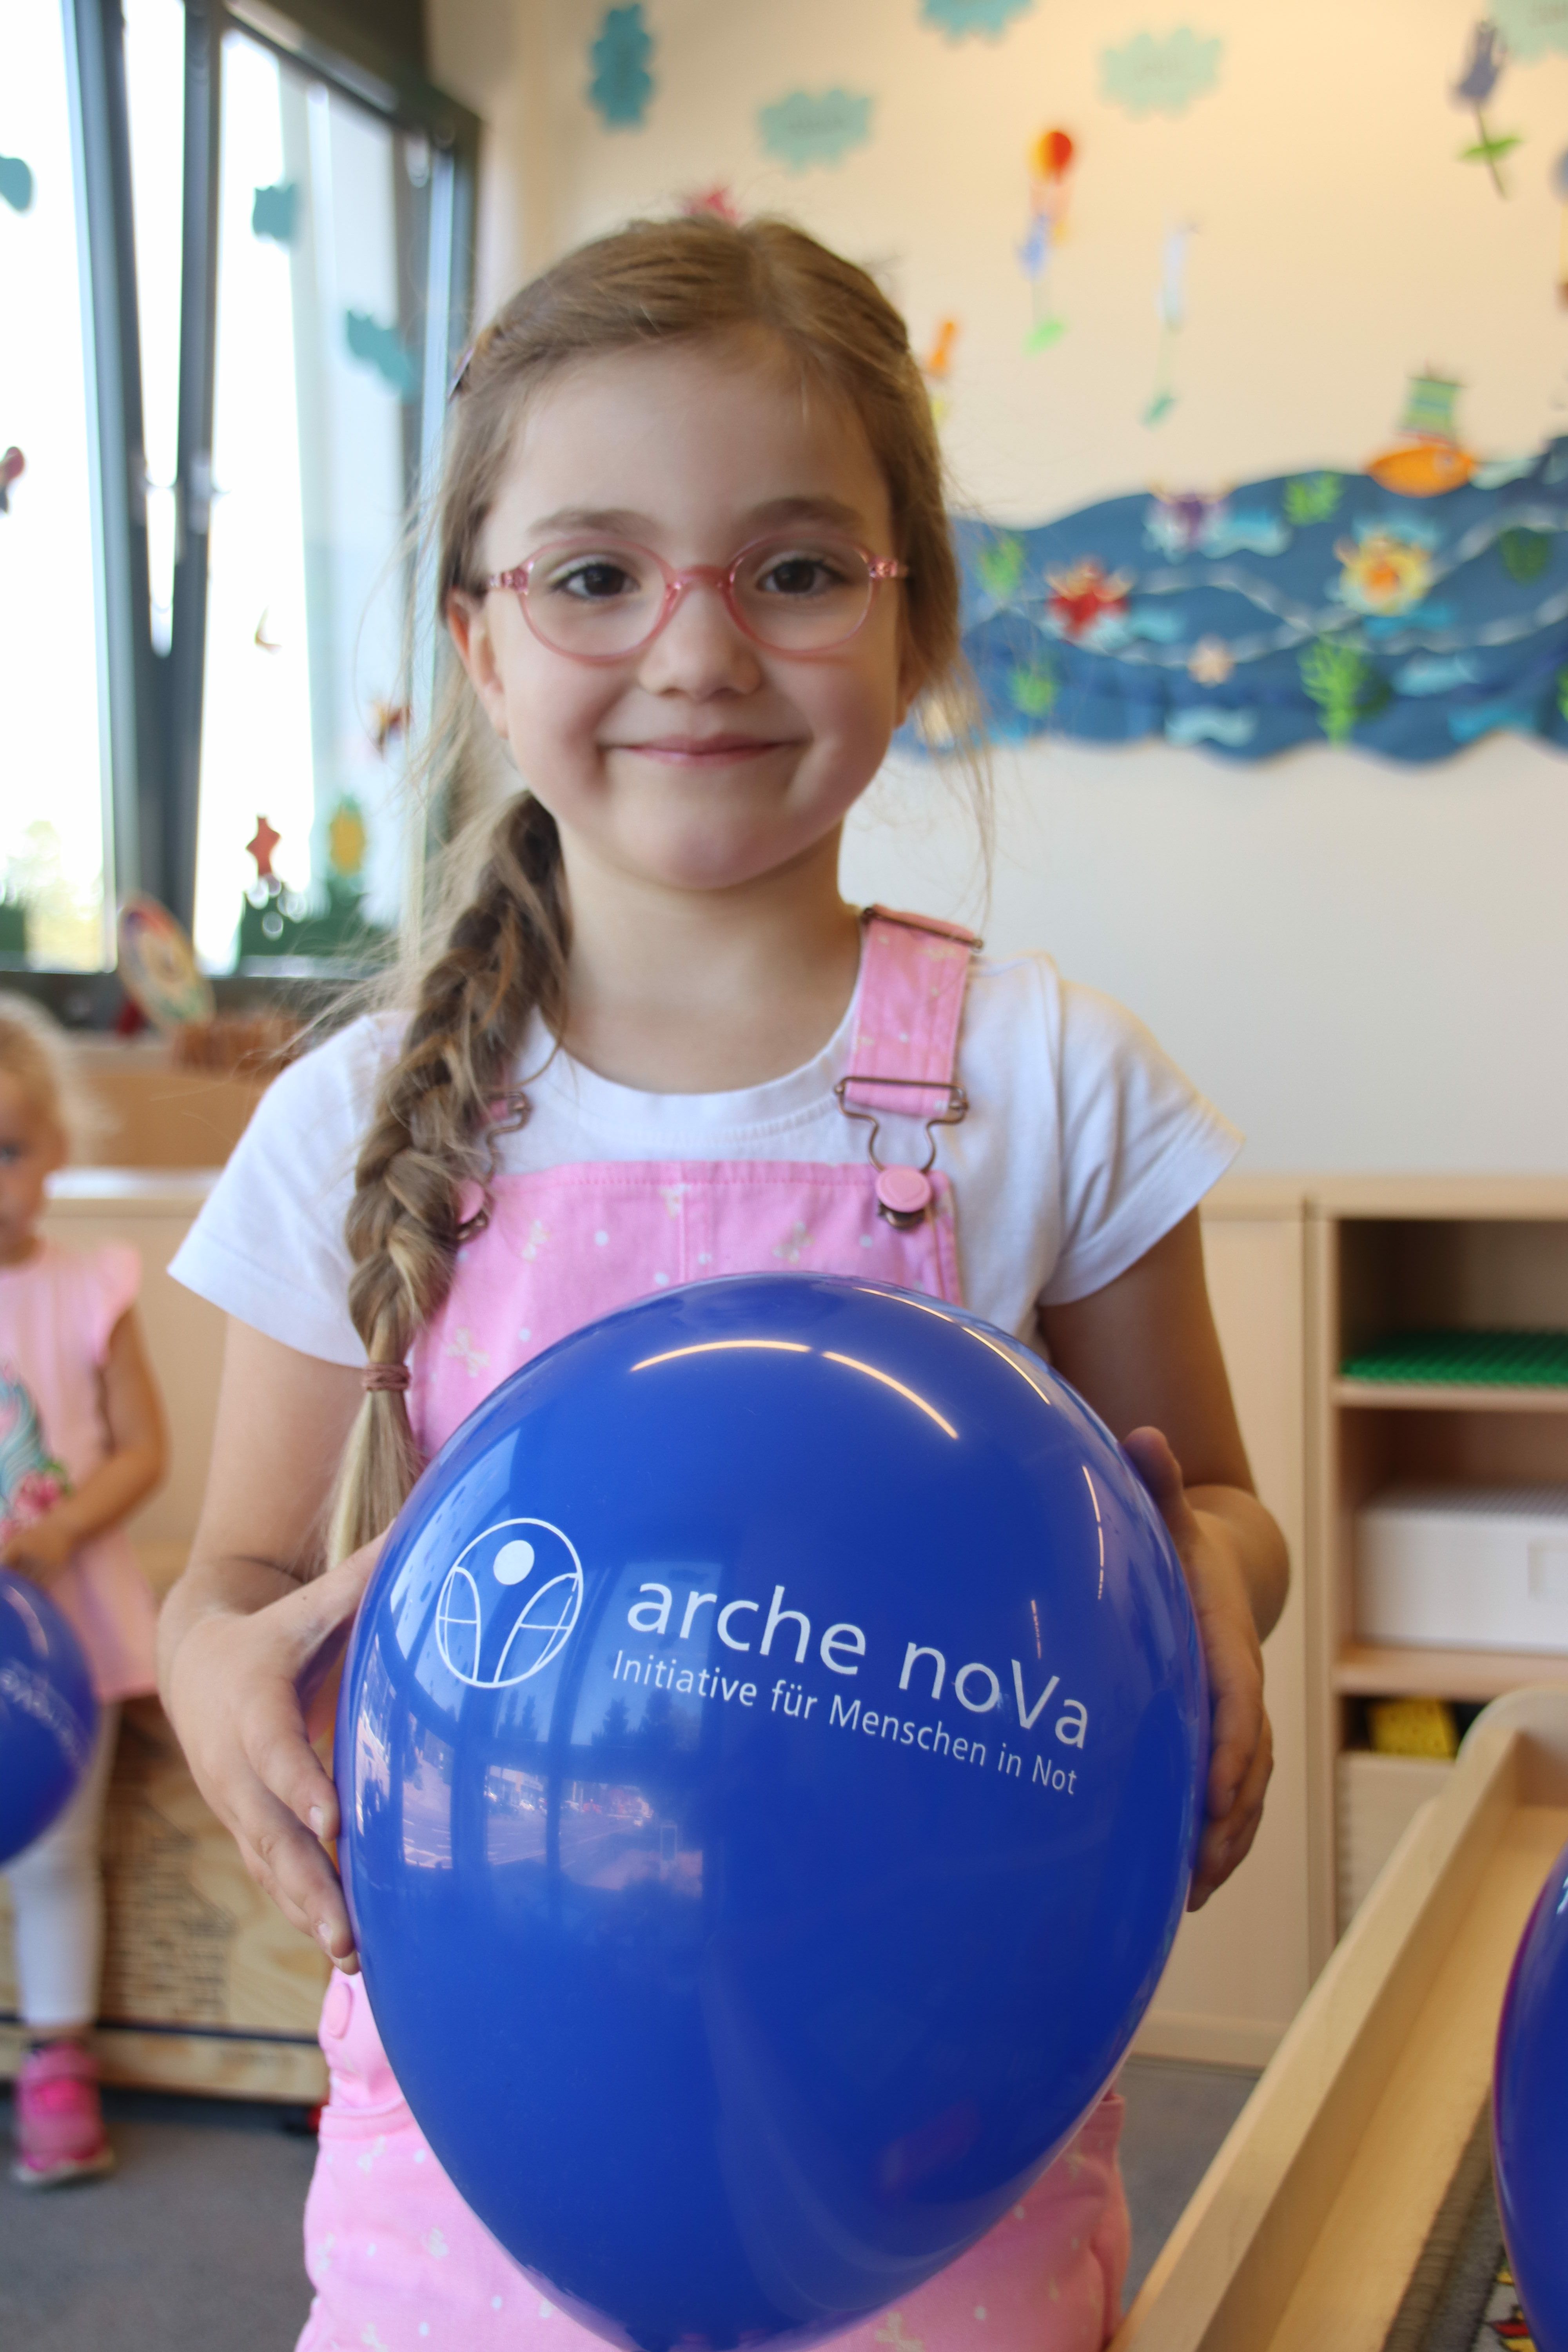 Mädchen mit Brille, geflochtenem Zopf und rosafarbener Latzhose. Das Mädchen hält einen blauen Luftballon in den Händen, der mit dem Logo von arche noVa bedruckt ist.